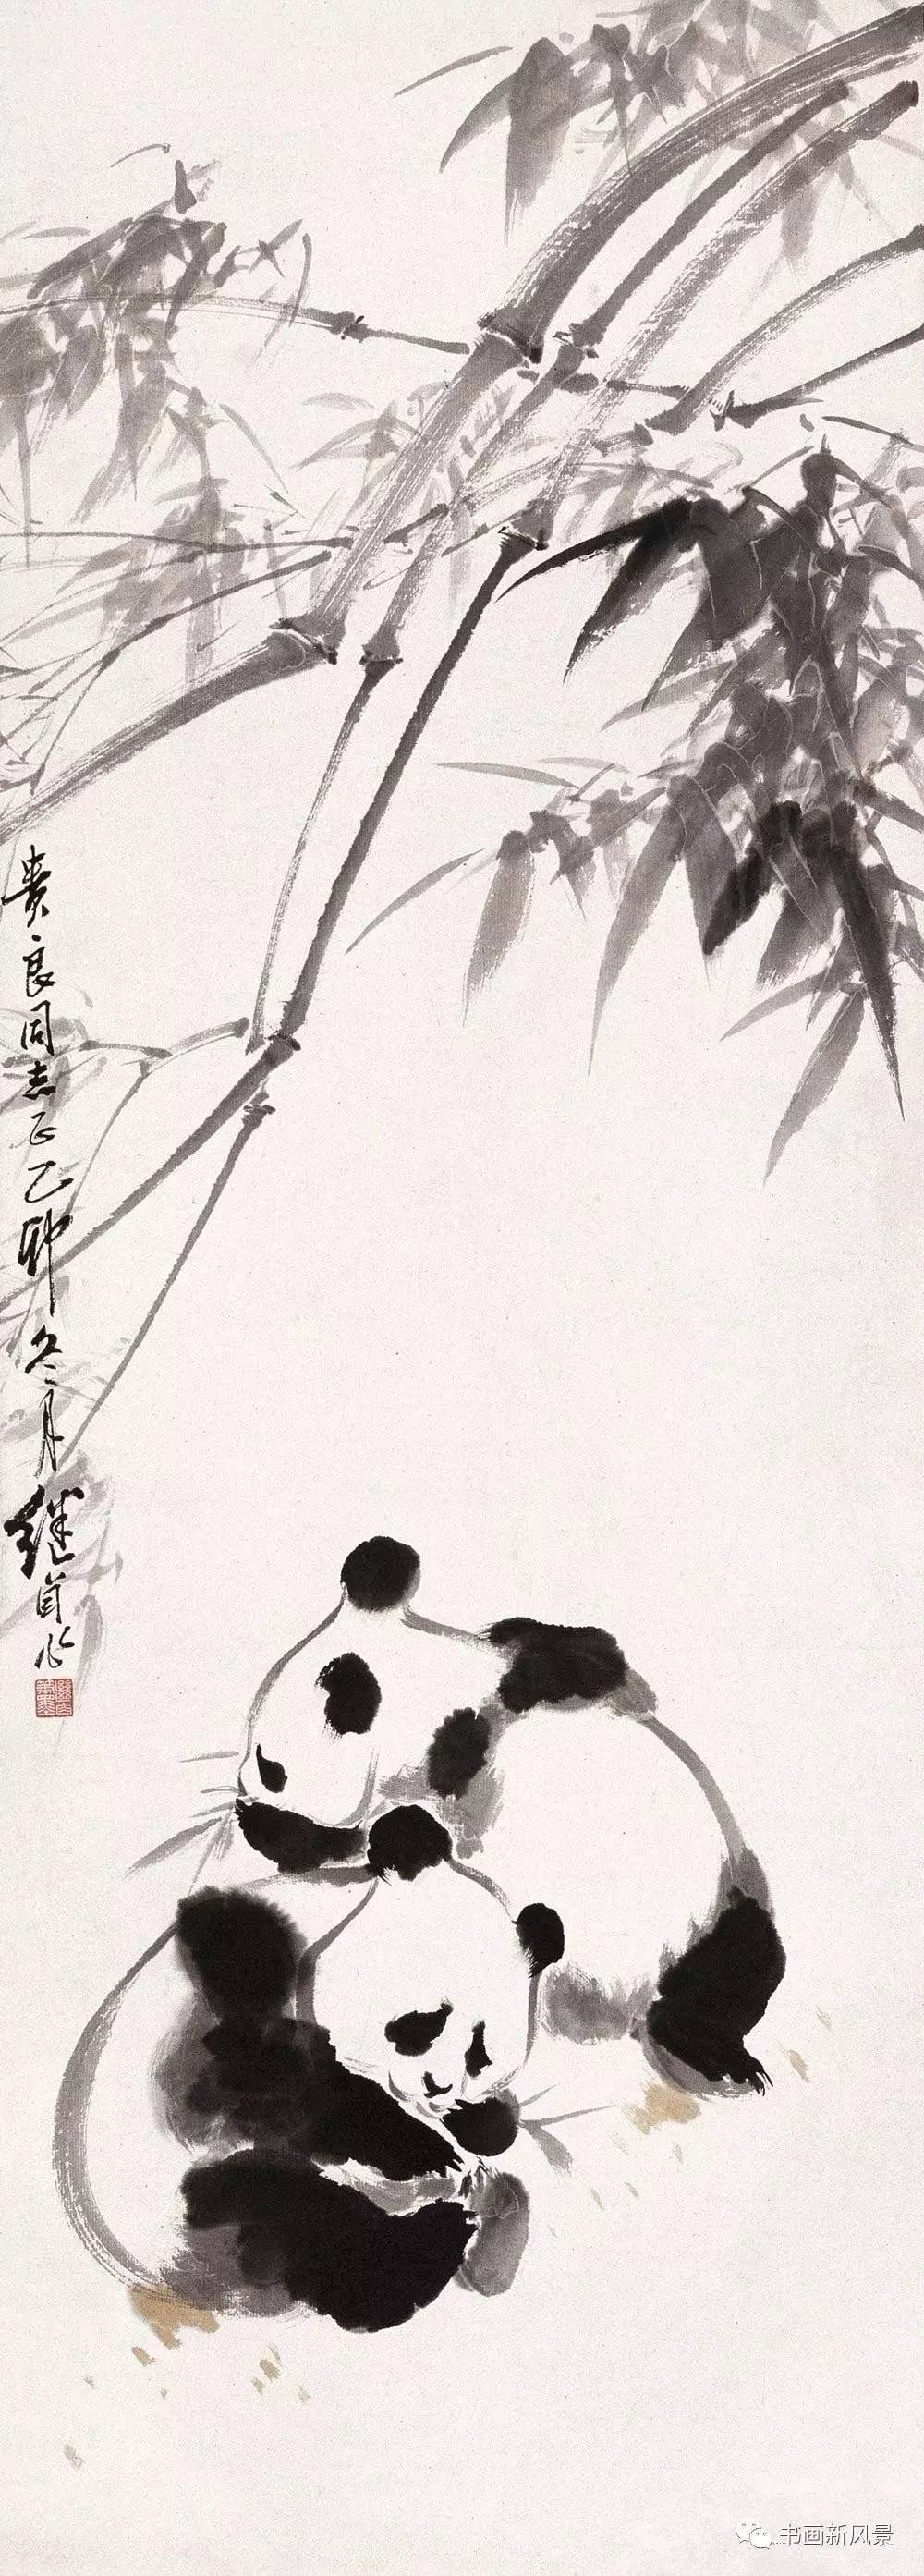 刘继卣画熊猫!